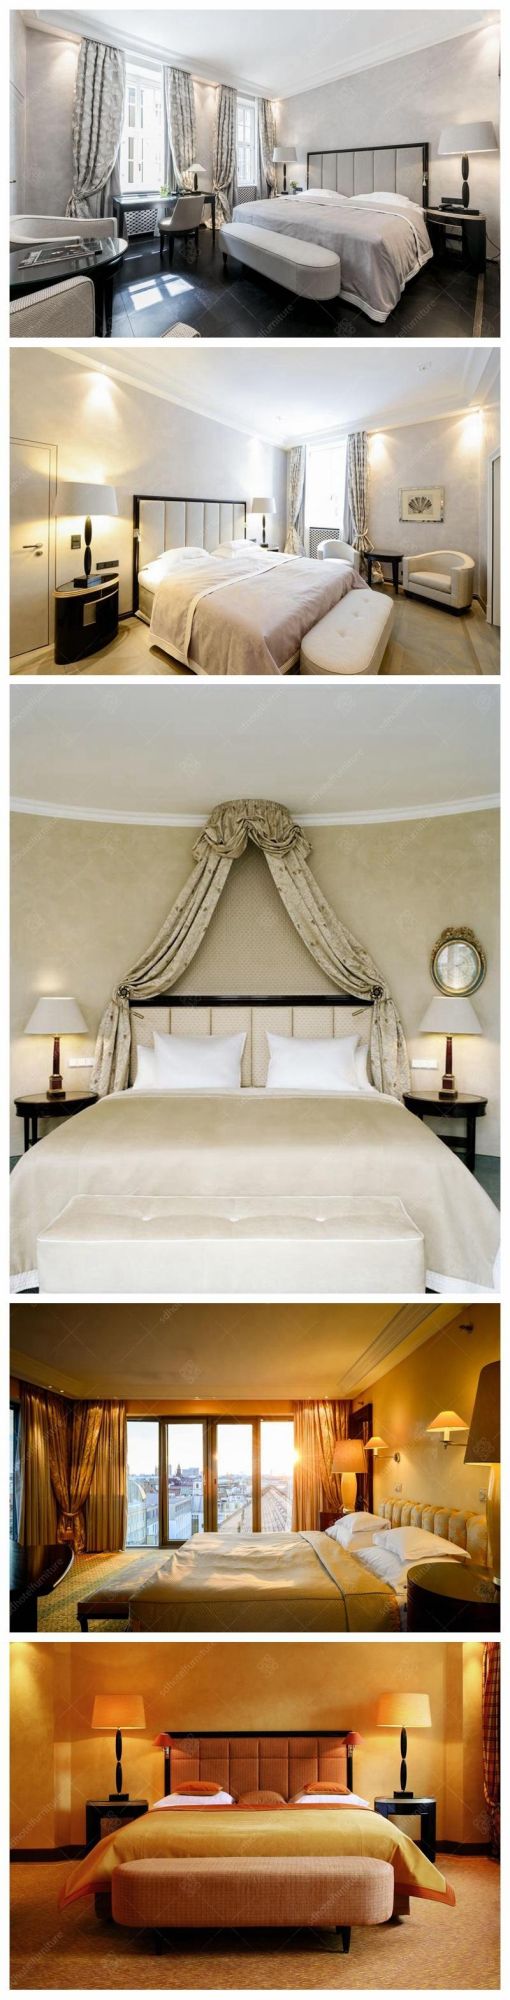 Luxury Elegant Style 5 Stars Hotel Bedroom Furniture Sets